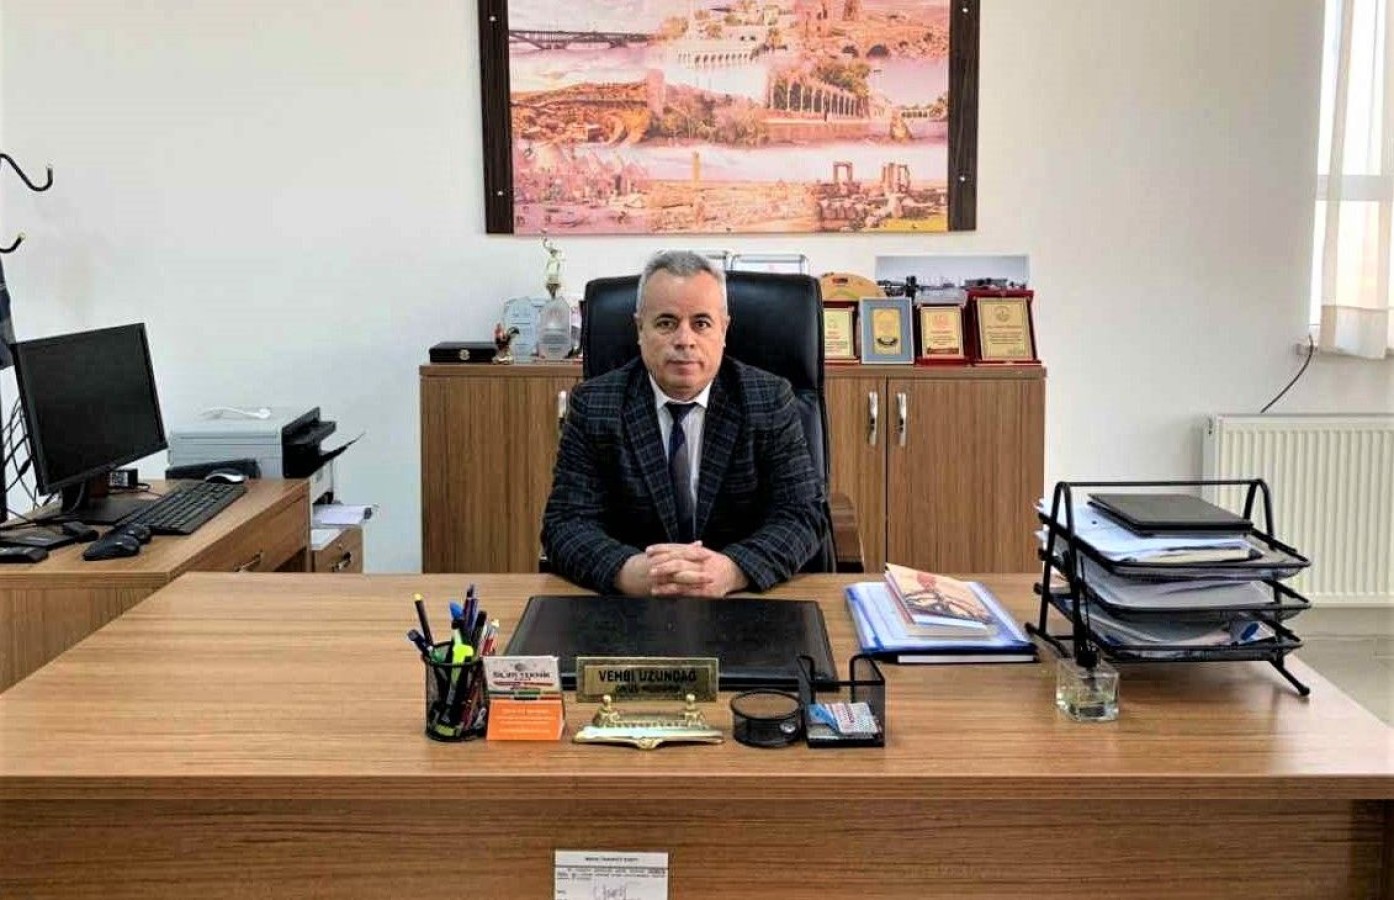 Uzundağ, MEB Yönetici Atama Yönetmeliği’ni değerlendirdi: Yönetmelik beklentilerin uzağında kaldı